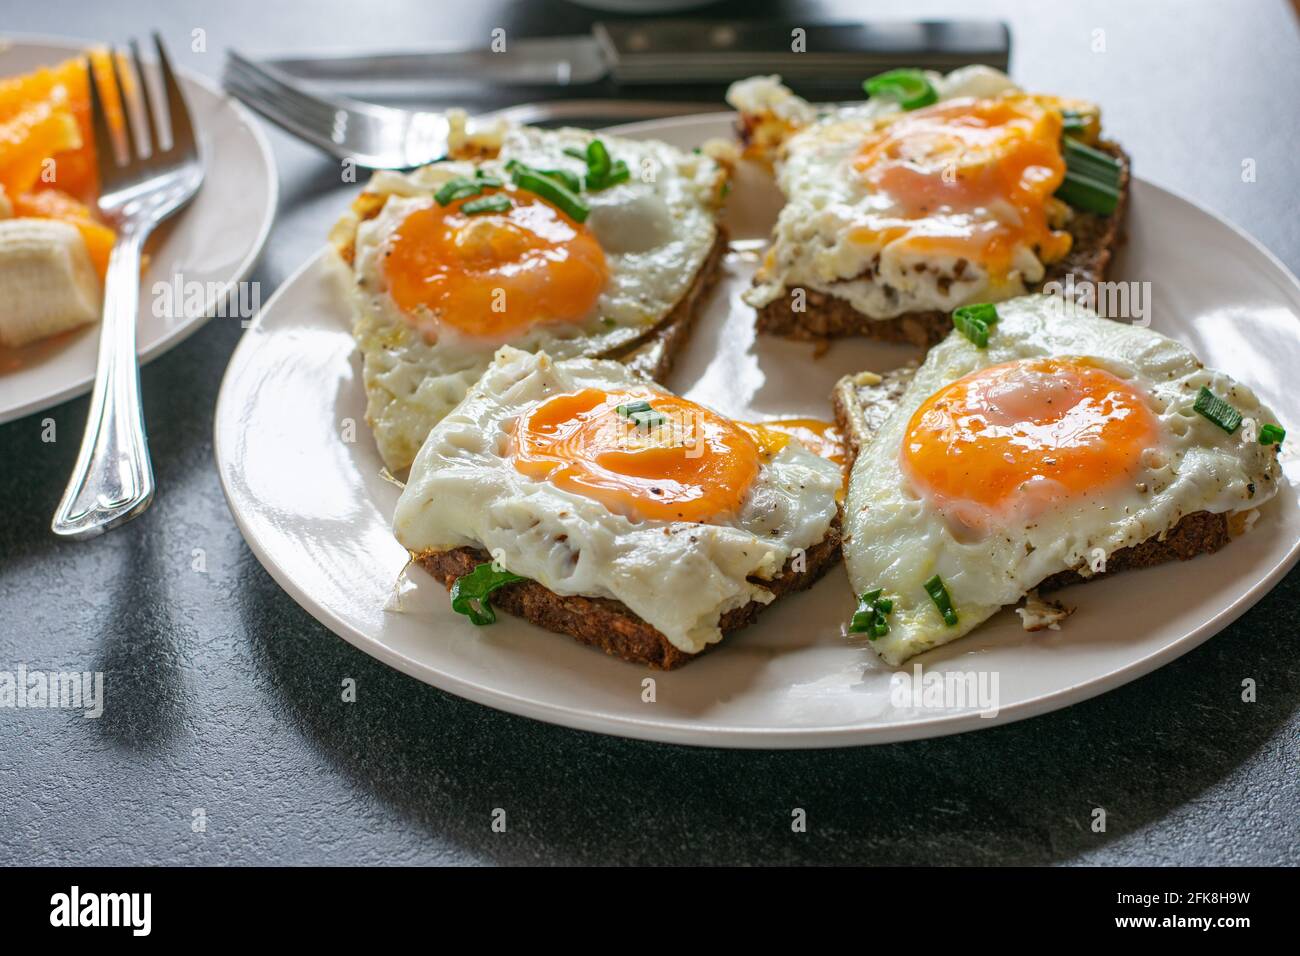 Ein Teller mit offenen Sandwiches und frisch gebratenen Sandwiches Eier und Schnittlauch isoliert auf einem Tisch zu Hause Stockfoto